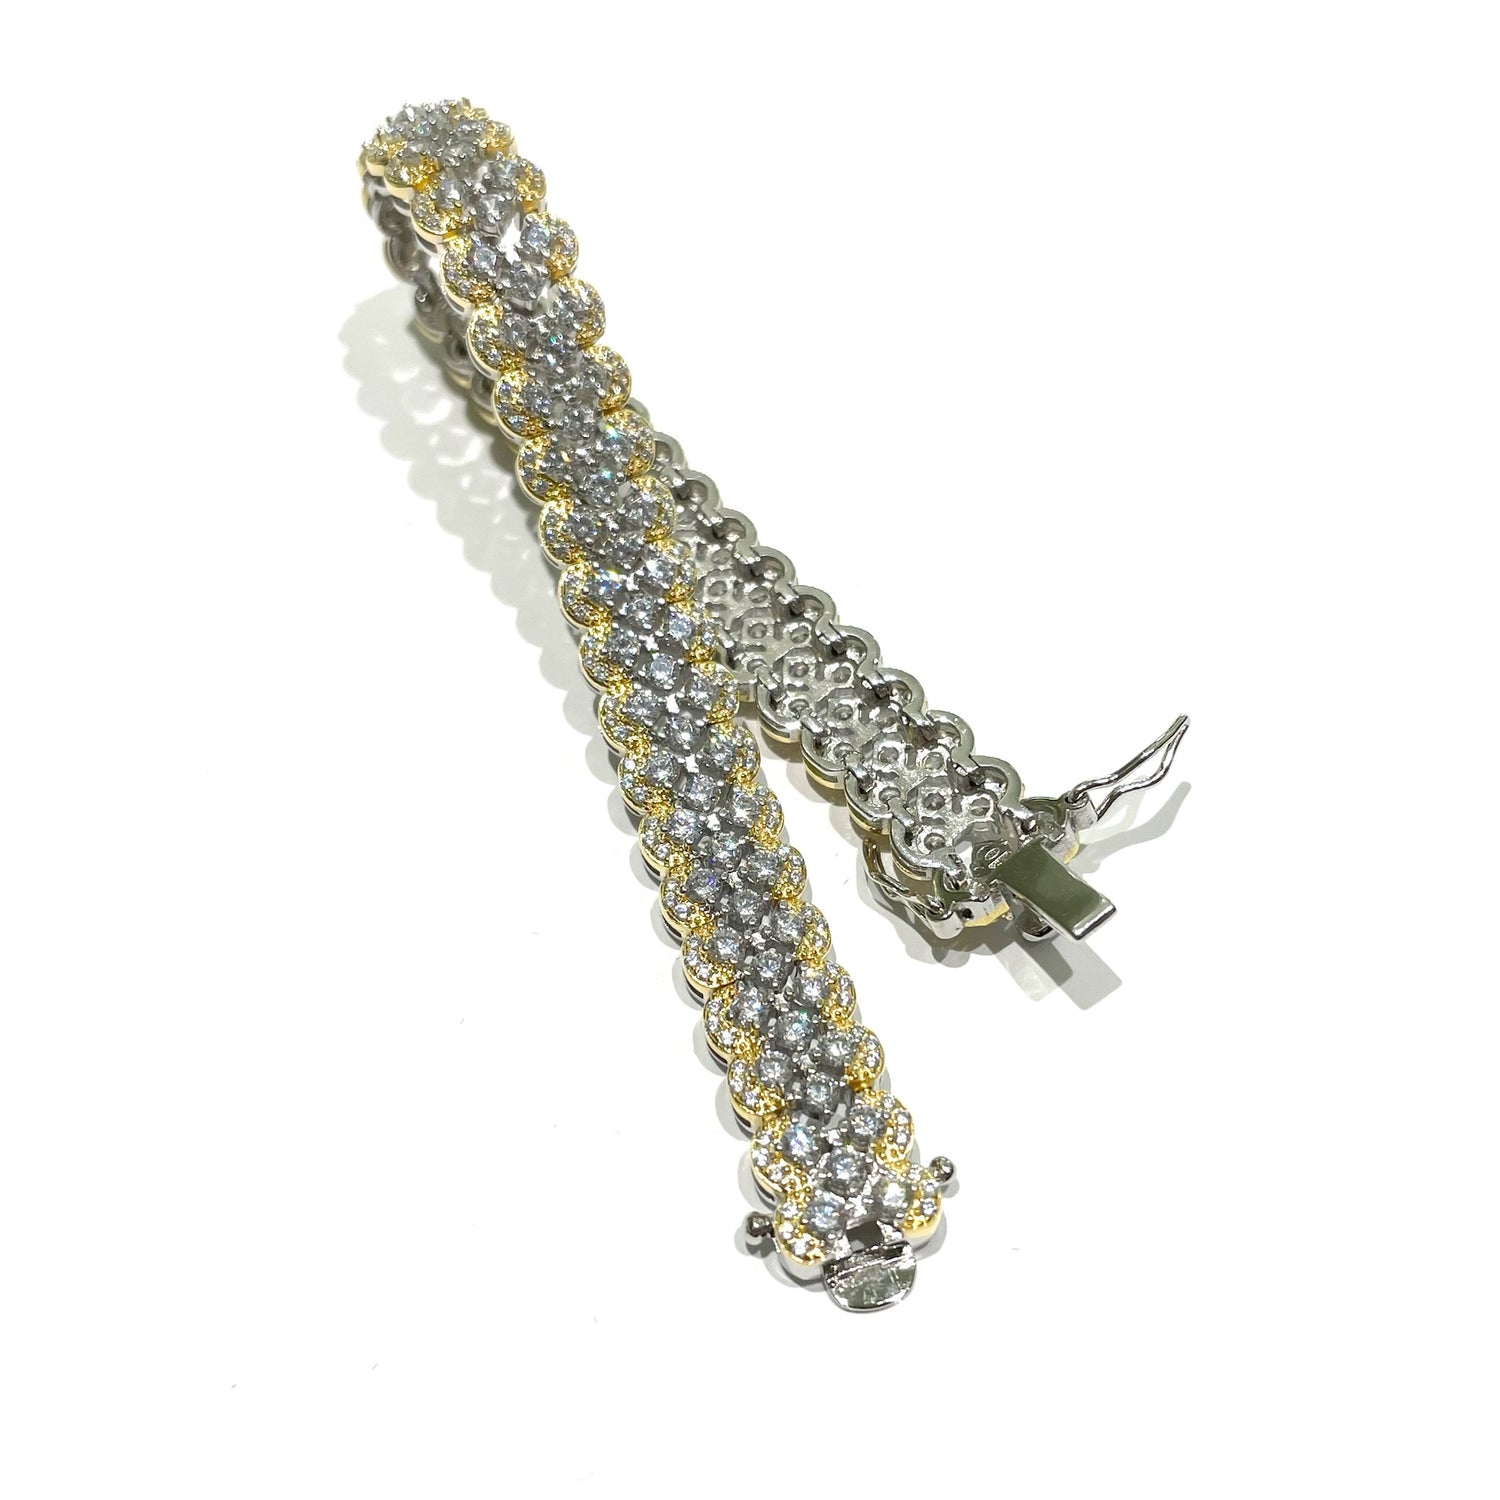 Bracciale in argento con maglia a catena ricoperta interamente da zirconi.

Lunghezza 18,5 cm.

Larghezza 1,2 cm.